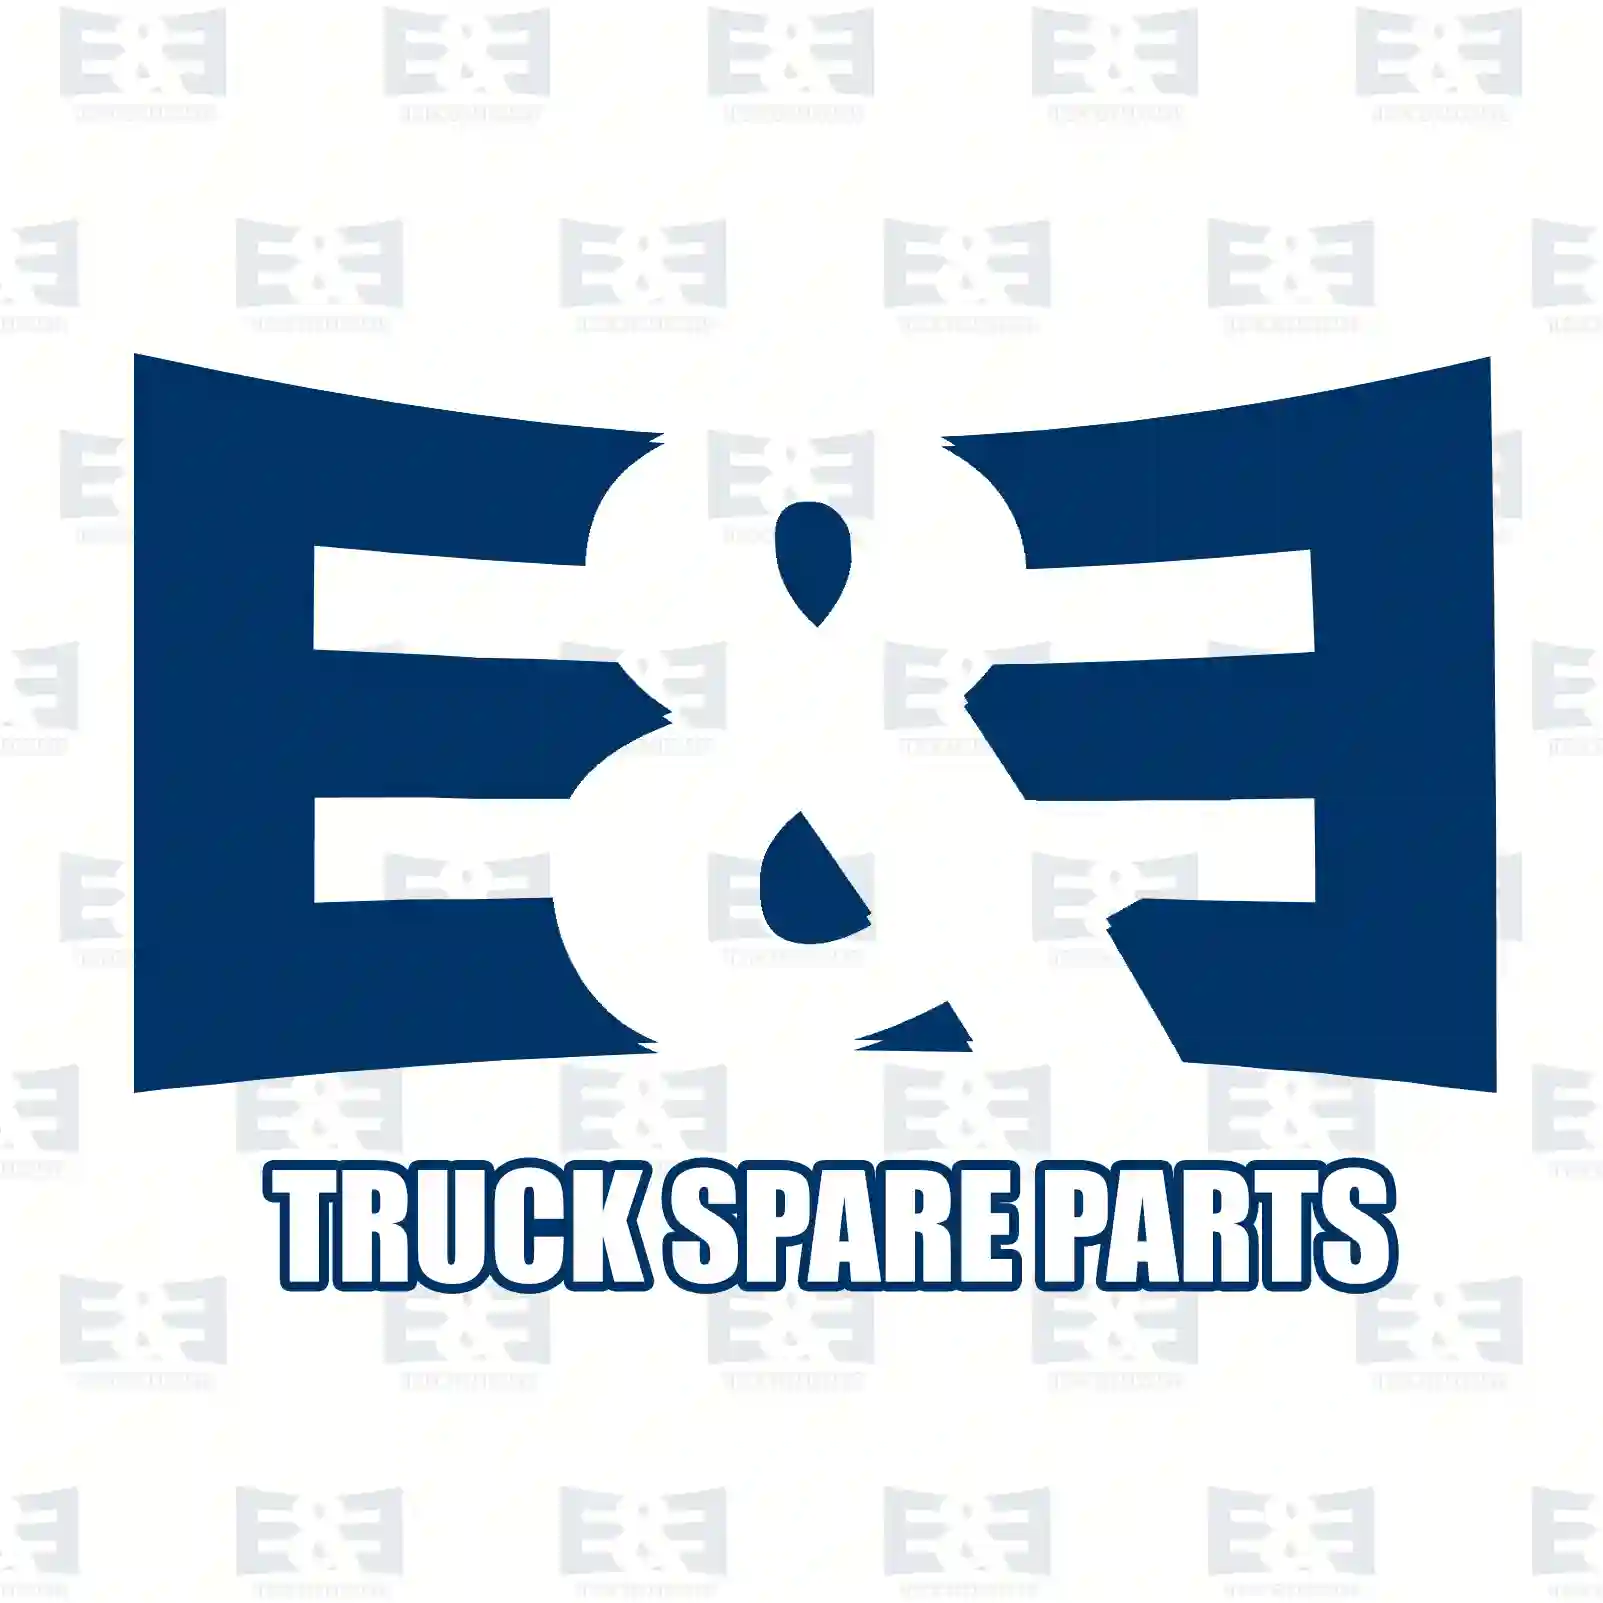 Oil seal, 2E2279264, 1335243, 372791, ZG02597-0008, ||  2E2279264 E&E Truck Spare Parts | Truck Spare Parts, Auotomotive Spare Parts Oil seal, 2E2279264, 1335243, 372791, ZG02597-0008, ||  2E2279264 E&E Truck Spare Parts | Truck Spare Parts, Auotomotive Spare Parts